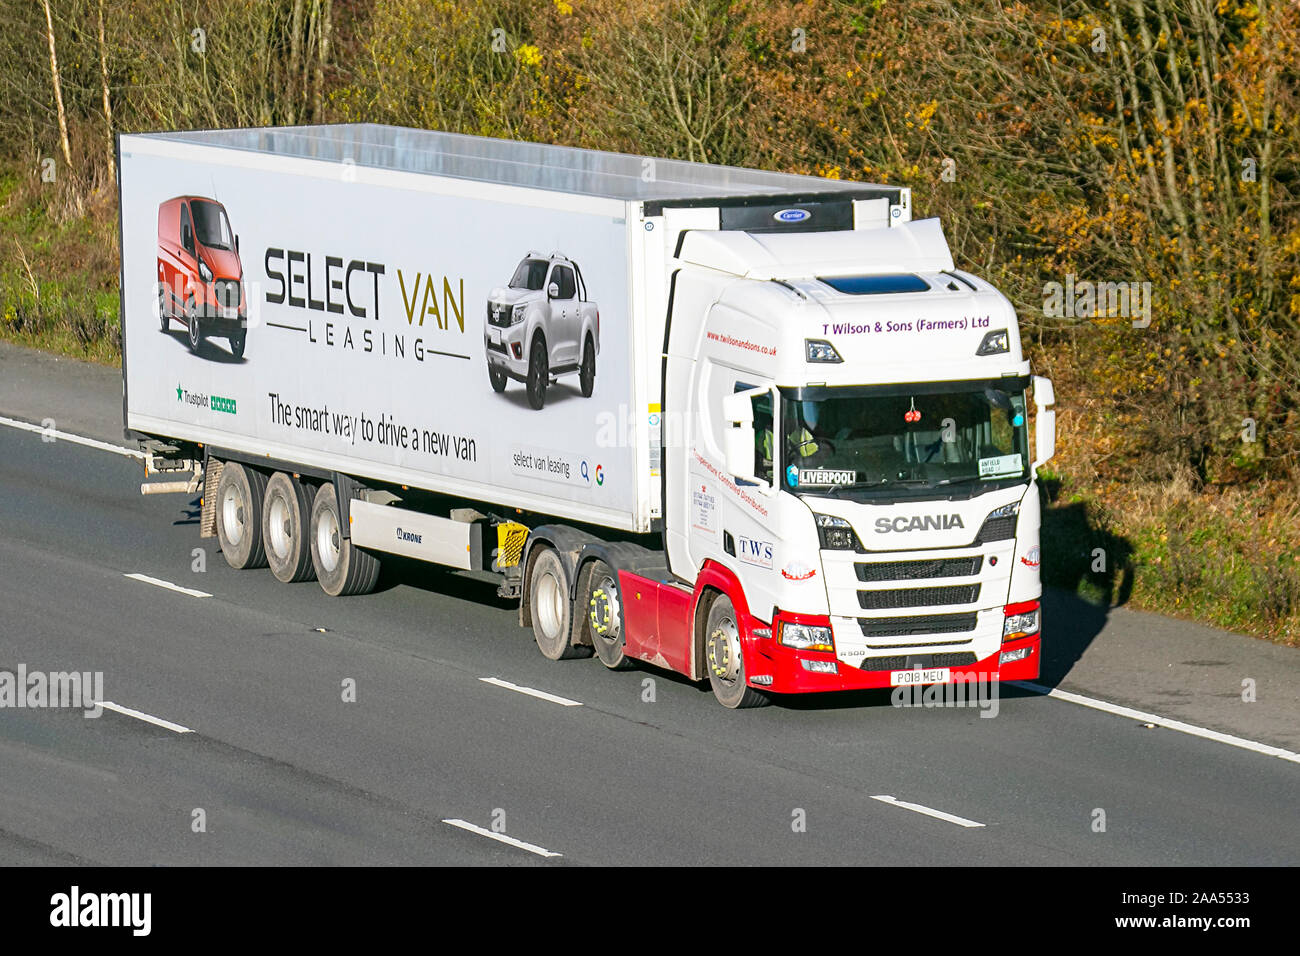 Sélectionnez Van Leasing; T Wilson & Sons Farmers Ltd camions de livraison  Haulage, camion, transport, camion, transporteur de fret, véhicule Scania,  transport commercial, industrie, M61 à Manchester, Royaume-Uni Photo Stock  - Alamy